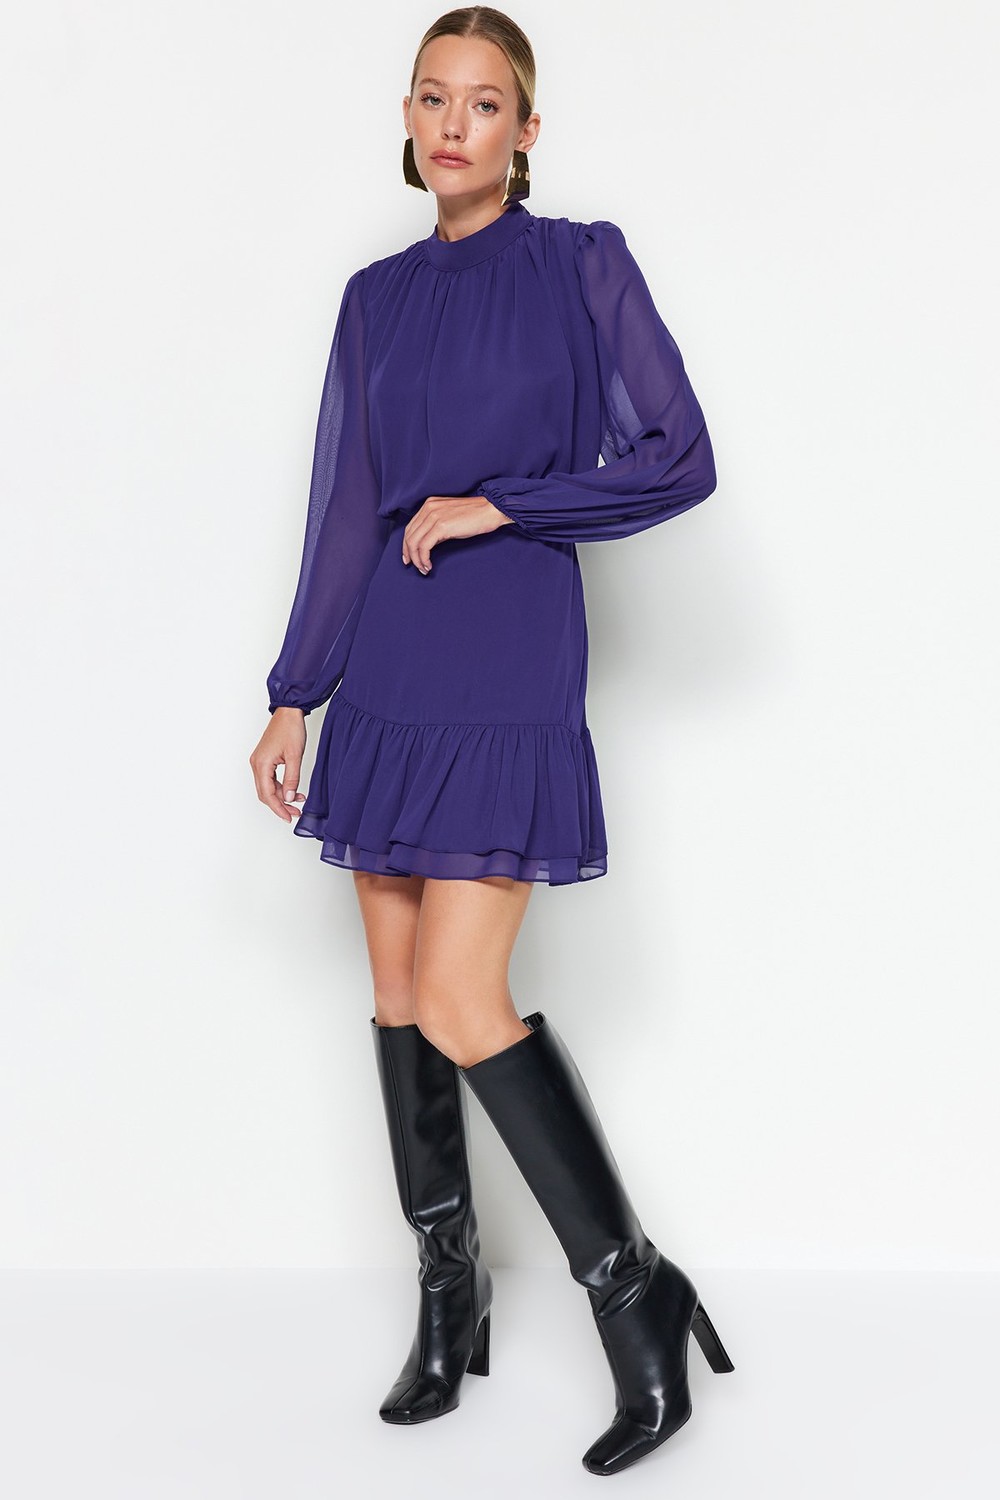 Trendyol Purple Woven Woven Dress